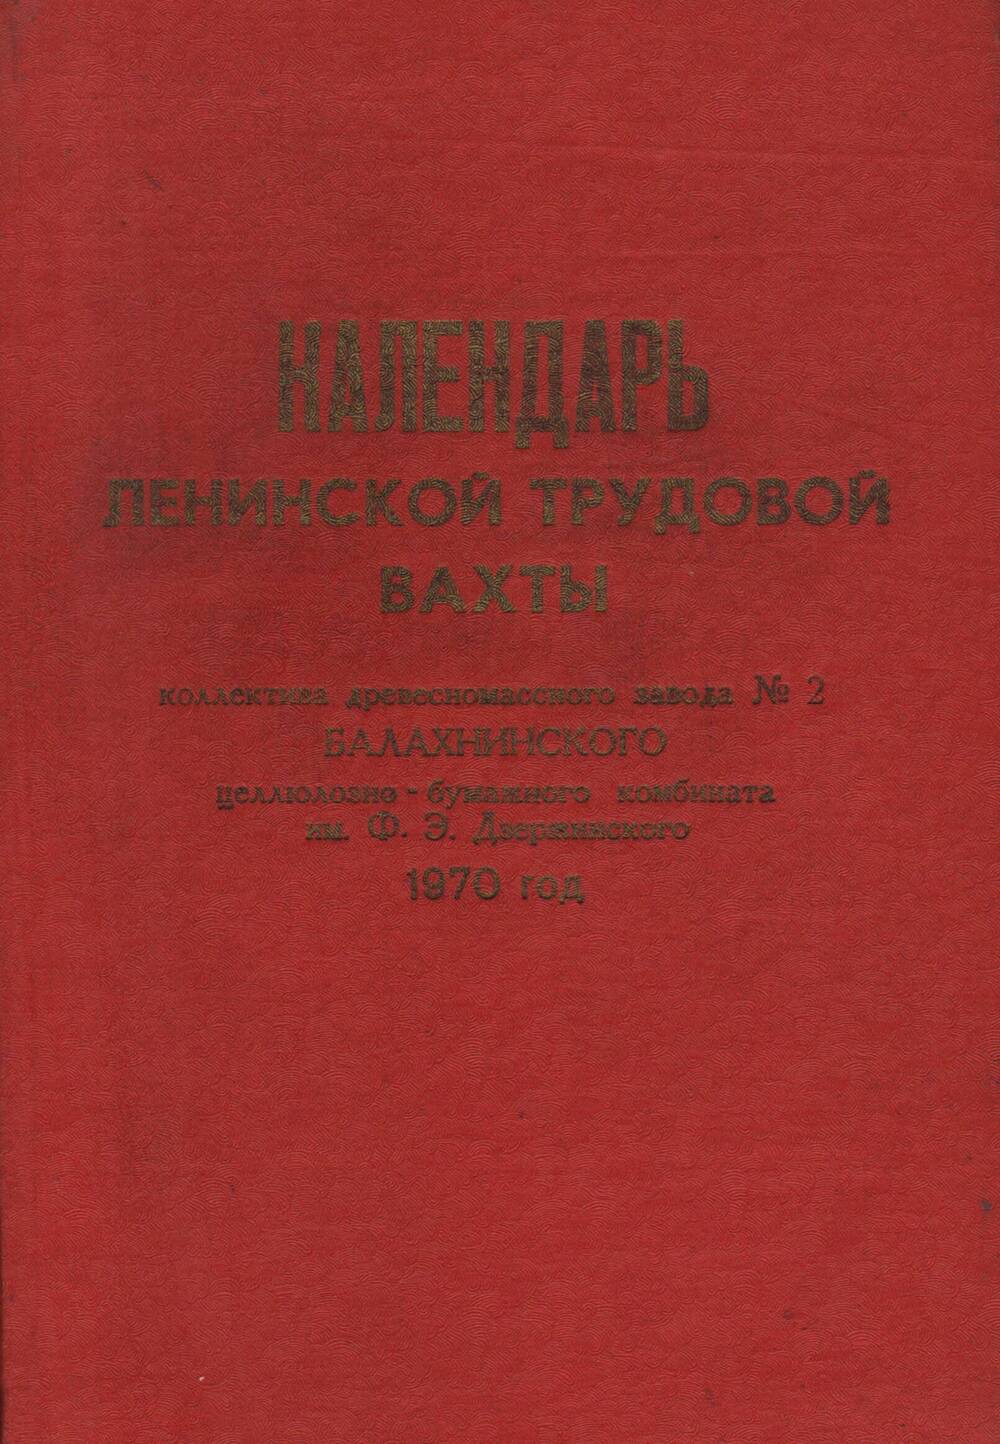 Календарь ленинской трудовой вахты древесно-массного завода № 2